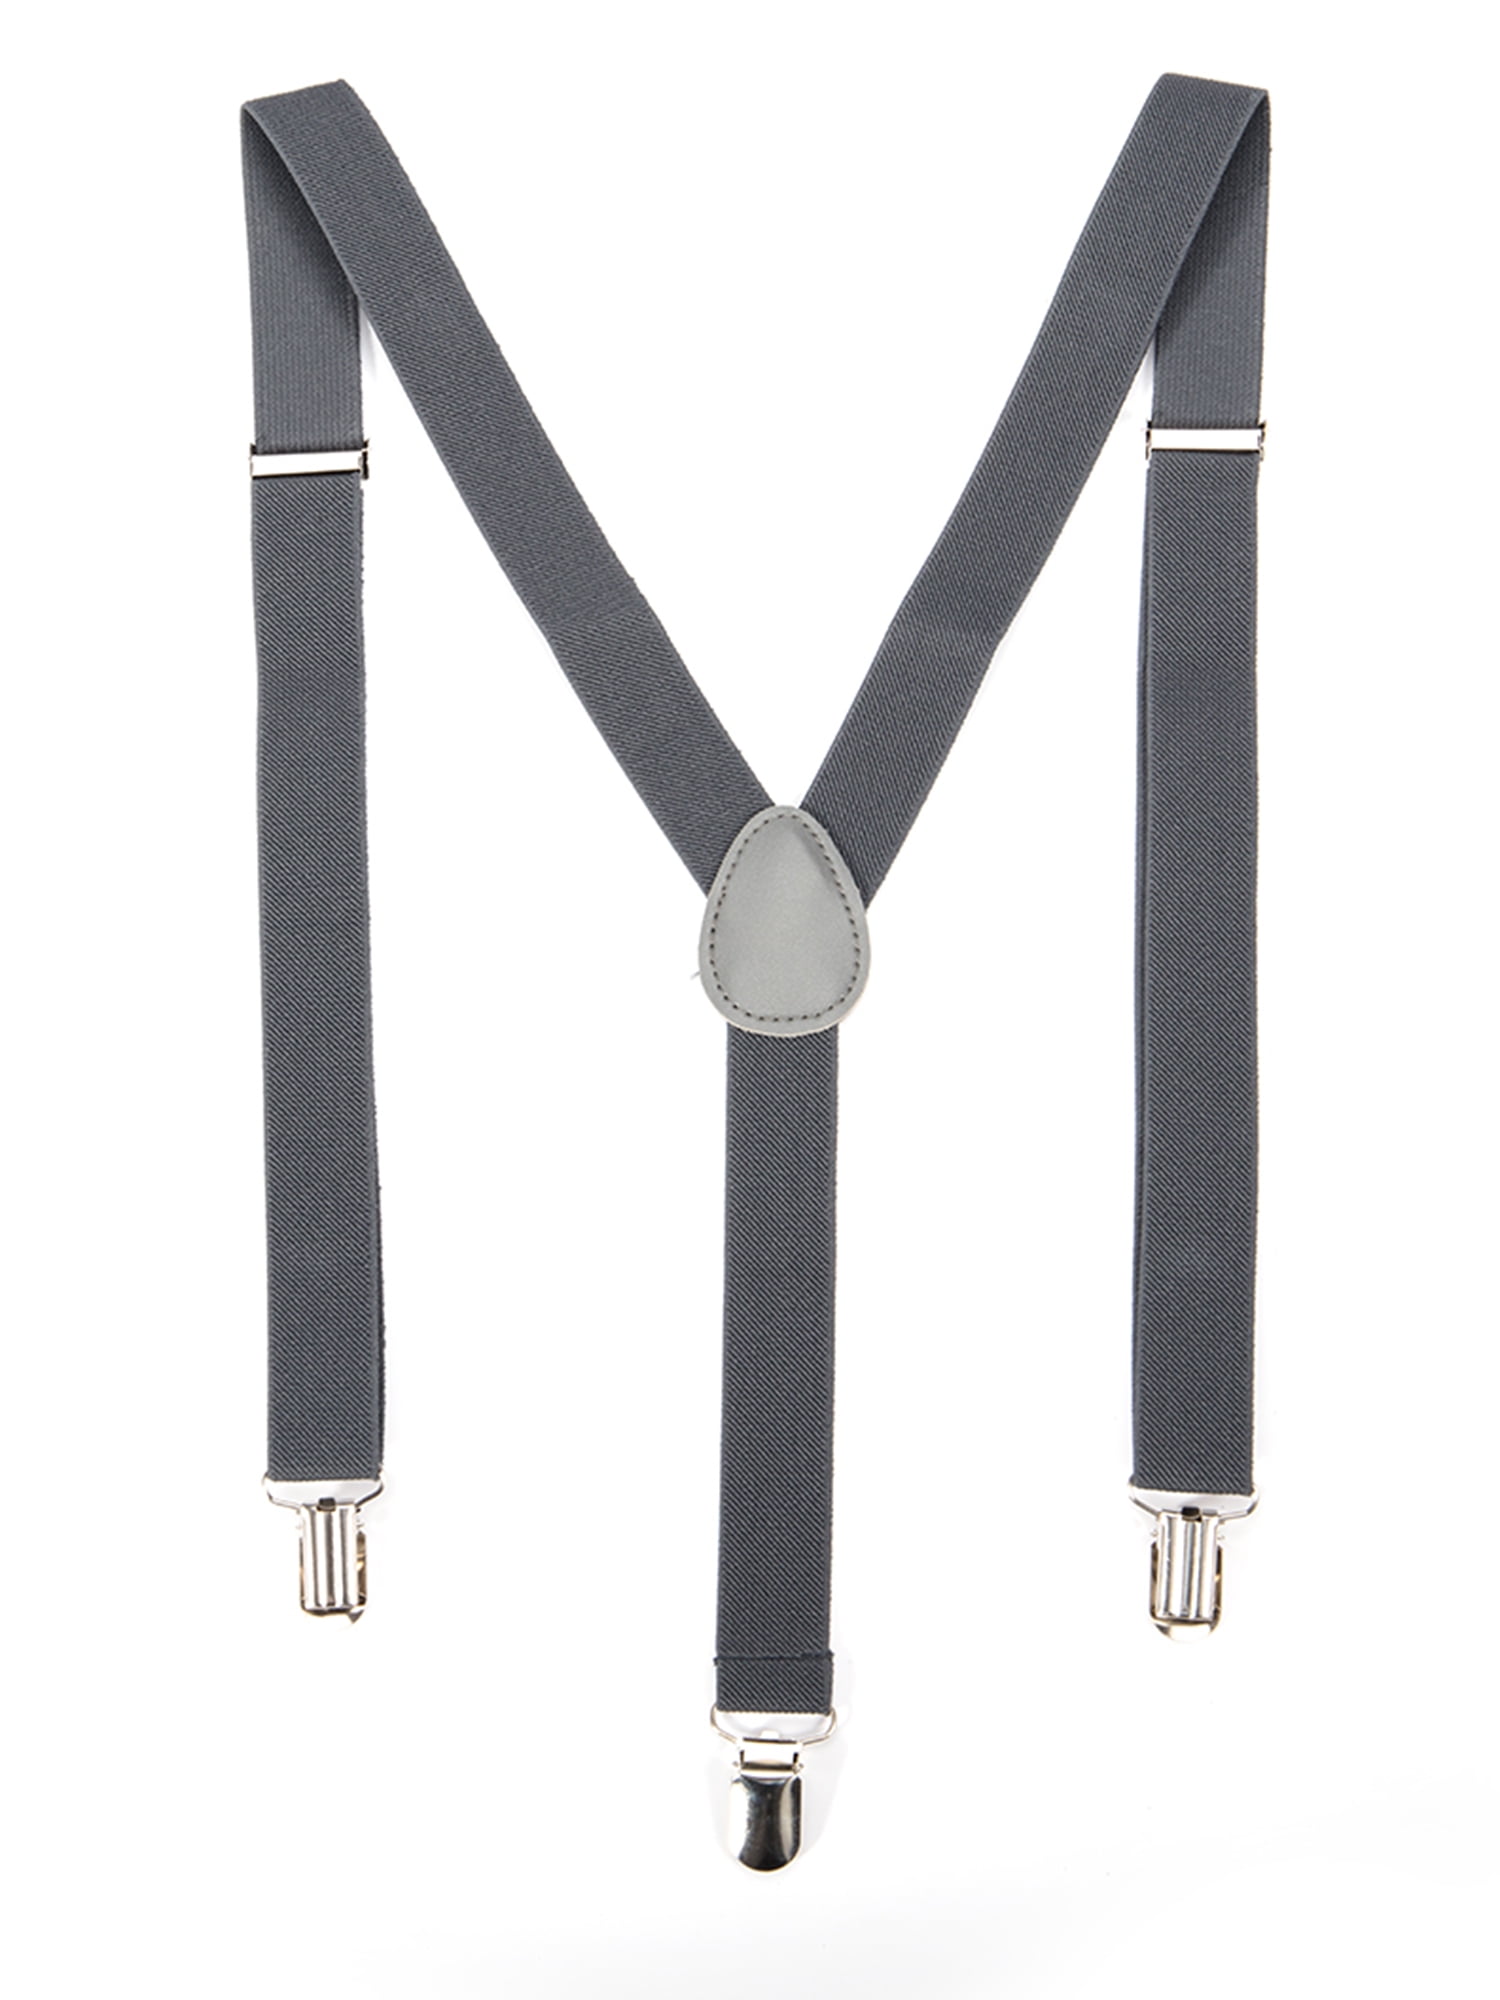 New Unisex Ladies Mens DUTY Braces Suspenders Elastic Adjustable Slim Fancy Belt 